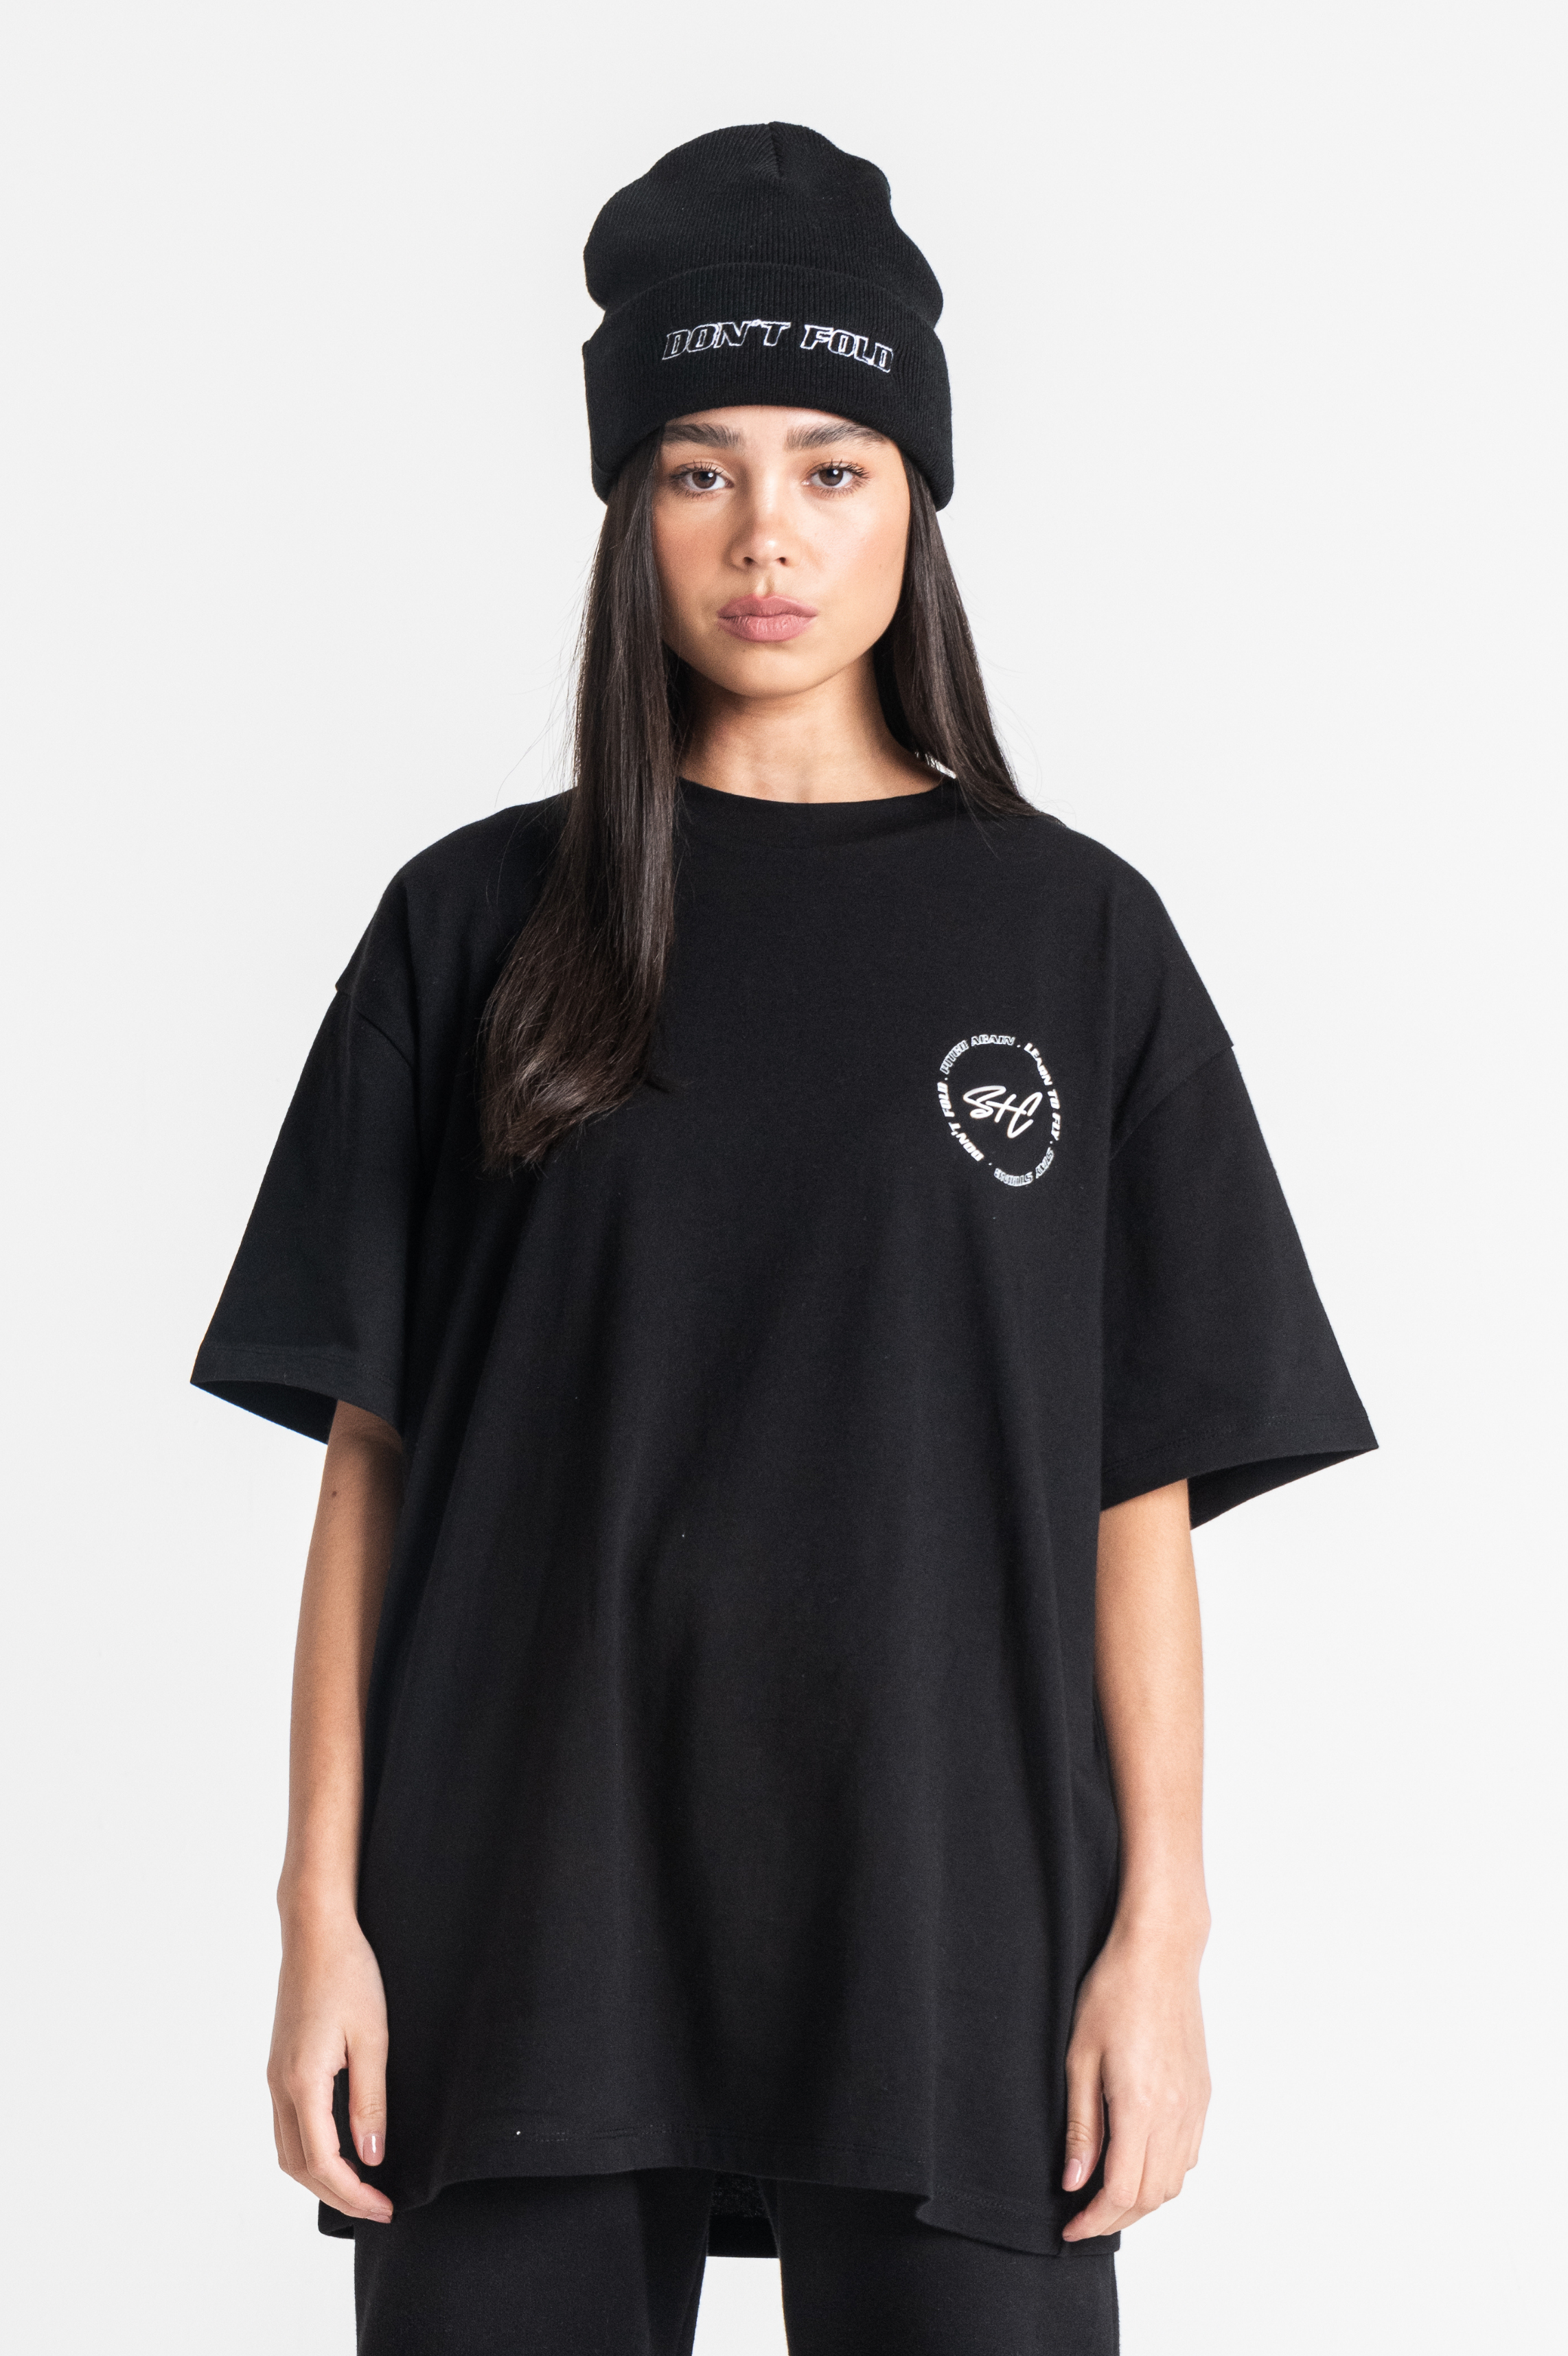 Oversized Black T-Shirt (Unisex)